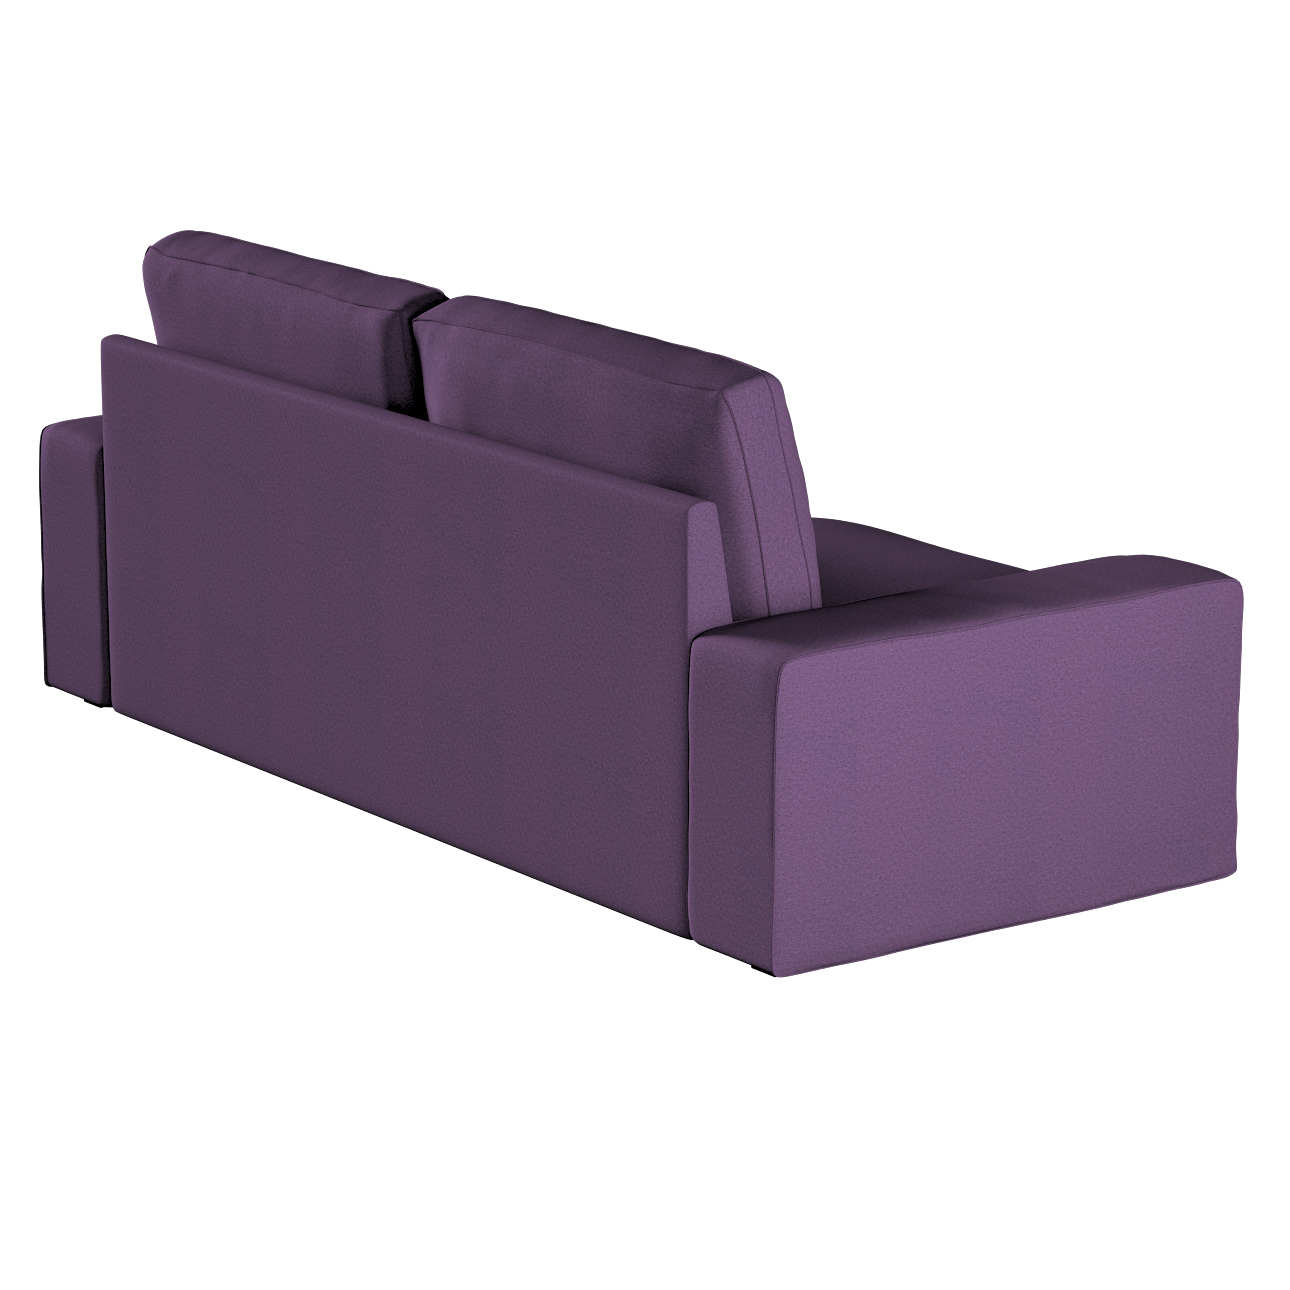 Bezug für Kivik 3-Sitzer Sofa, violett, Bezug für Sofa Kivik 3-Sitzer, Etna günstig online kaufen